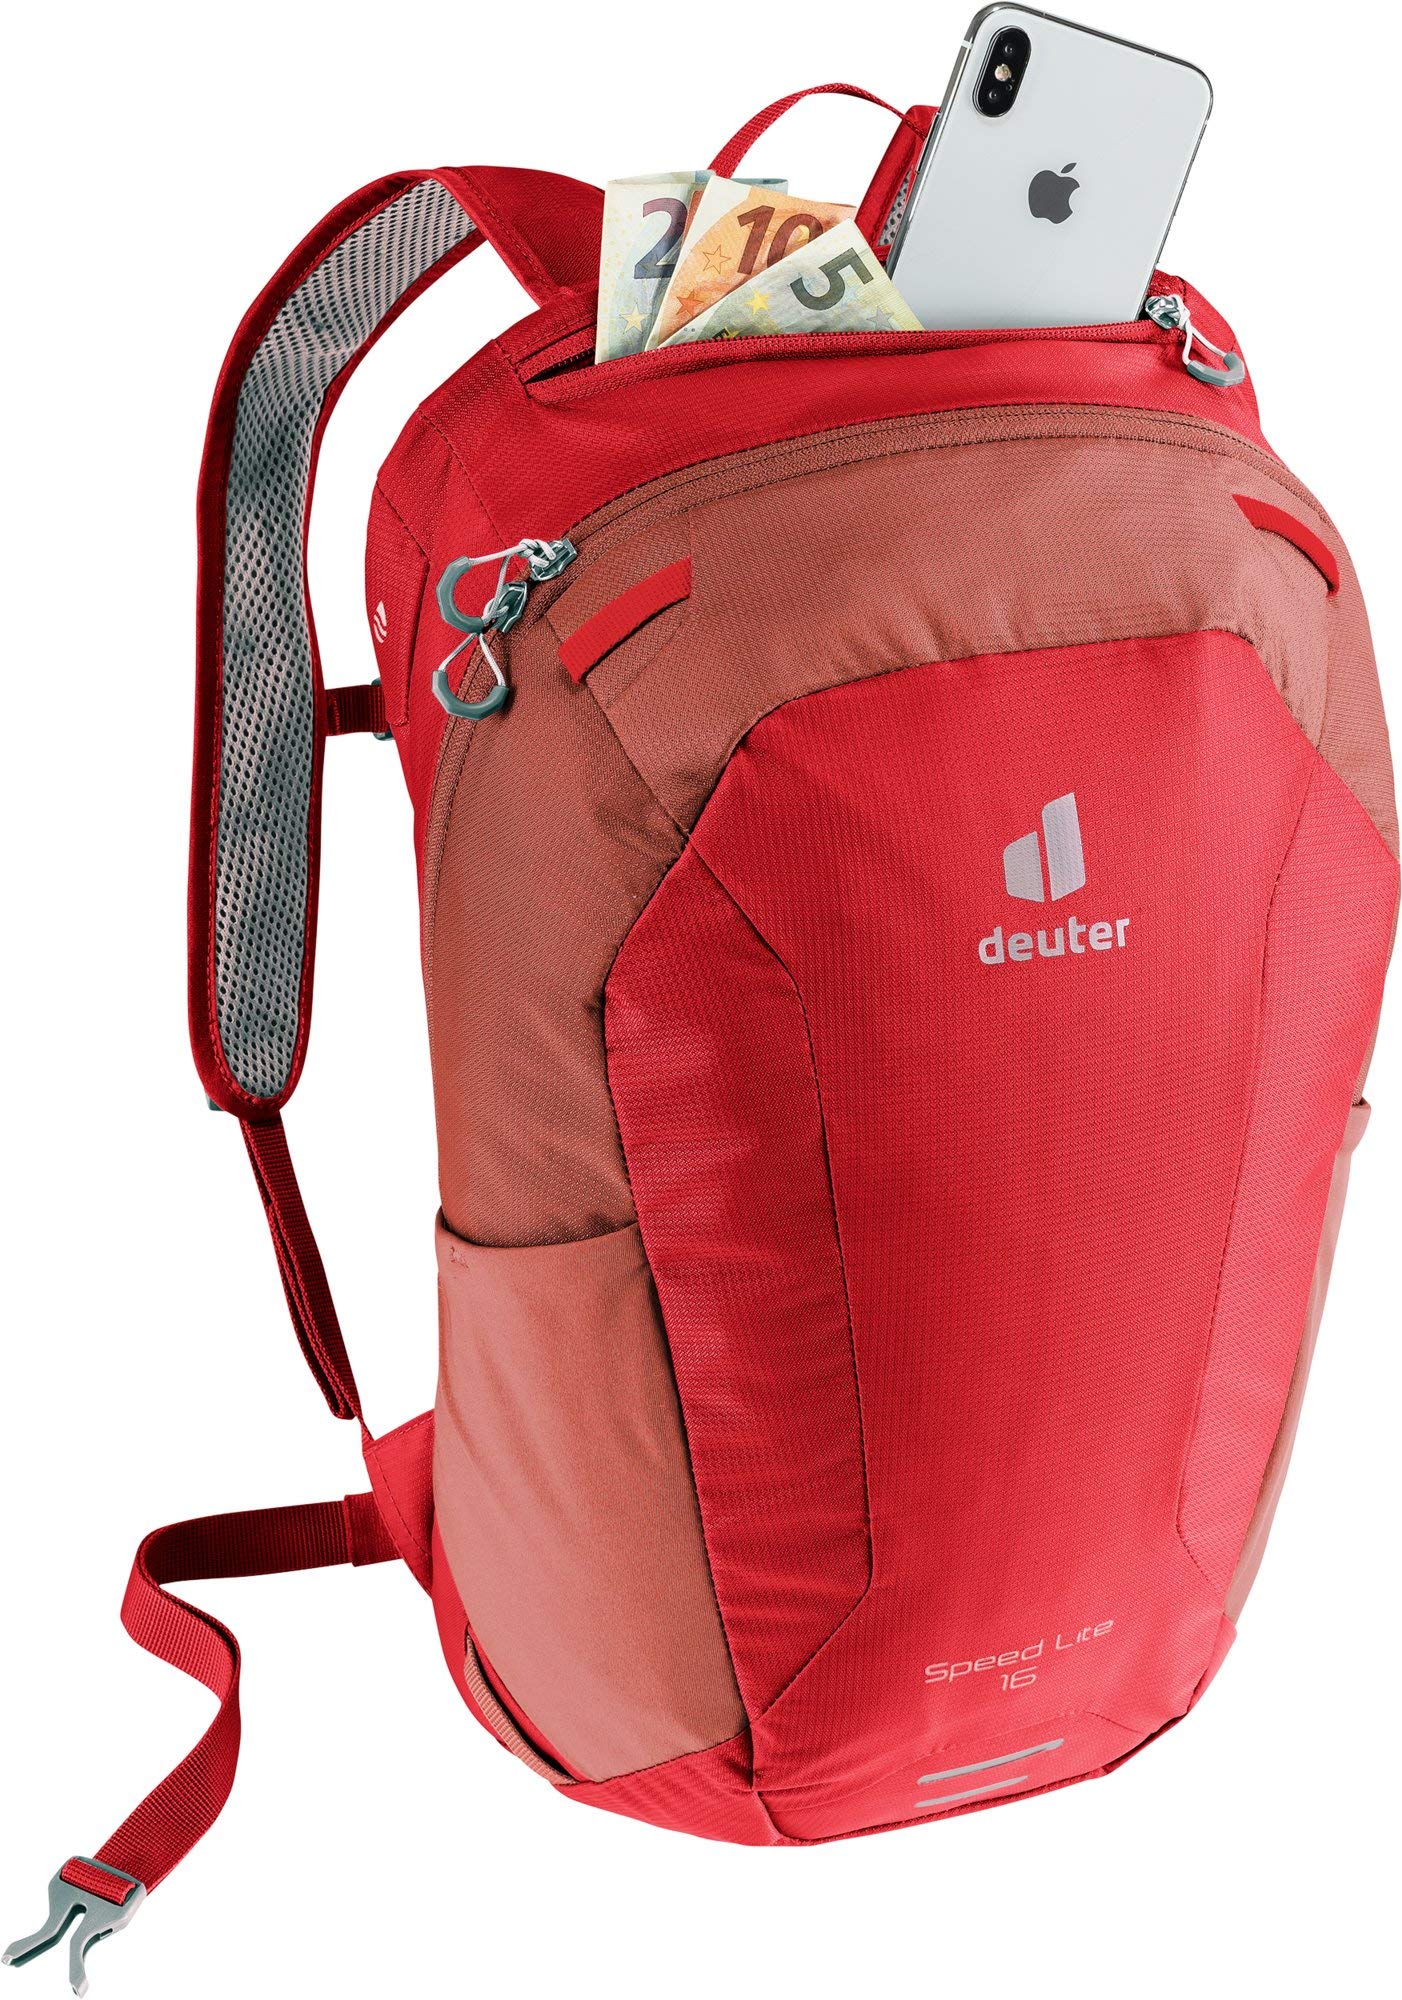 Deuter Speed Lite 16 Hiking Backpack - Cranberry/Maroon